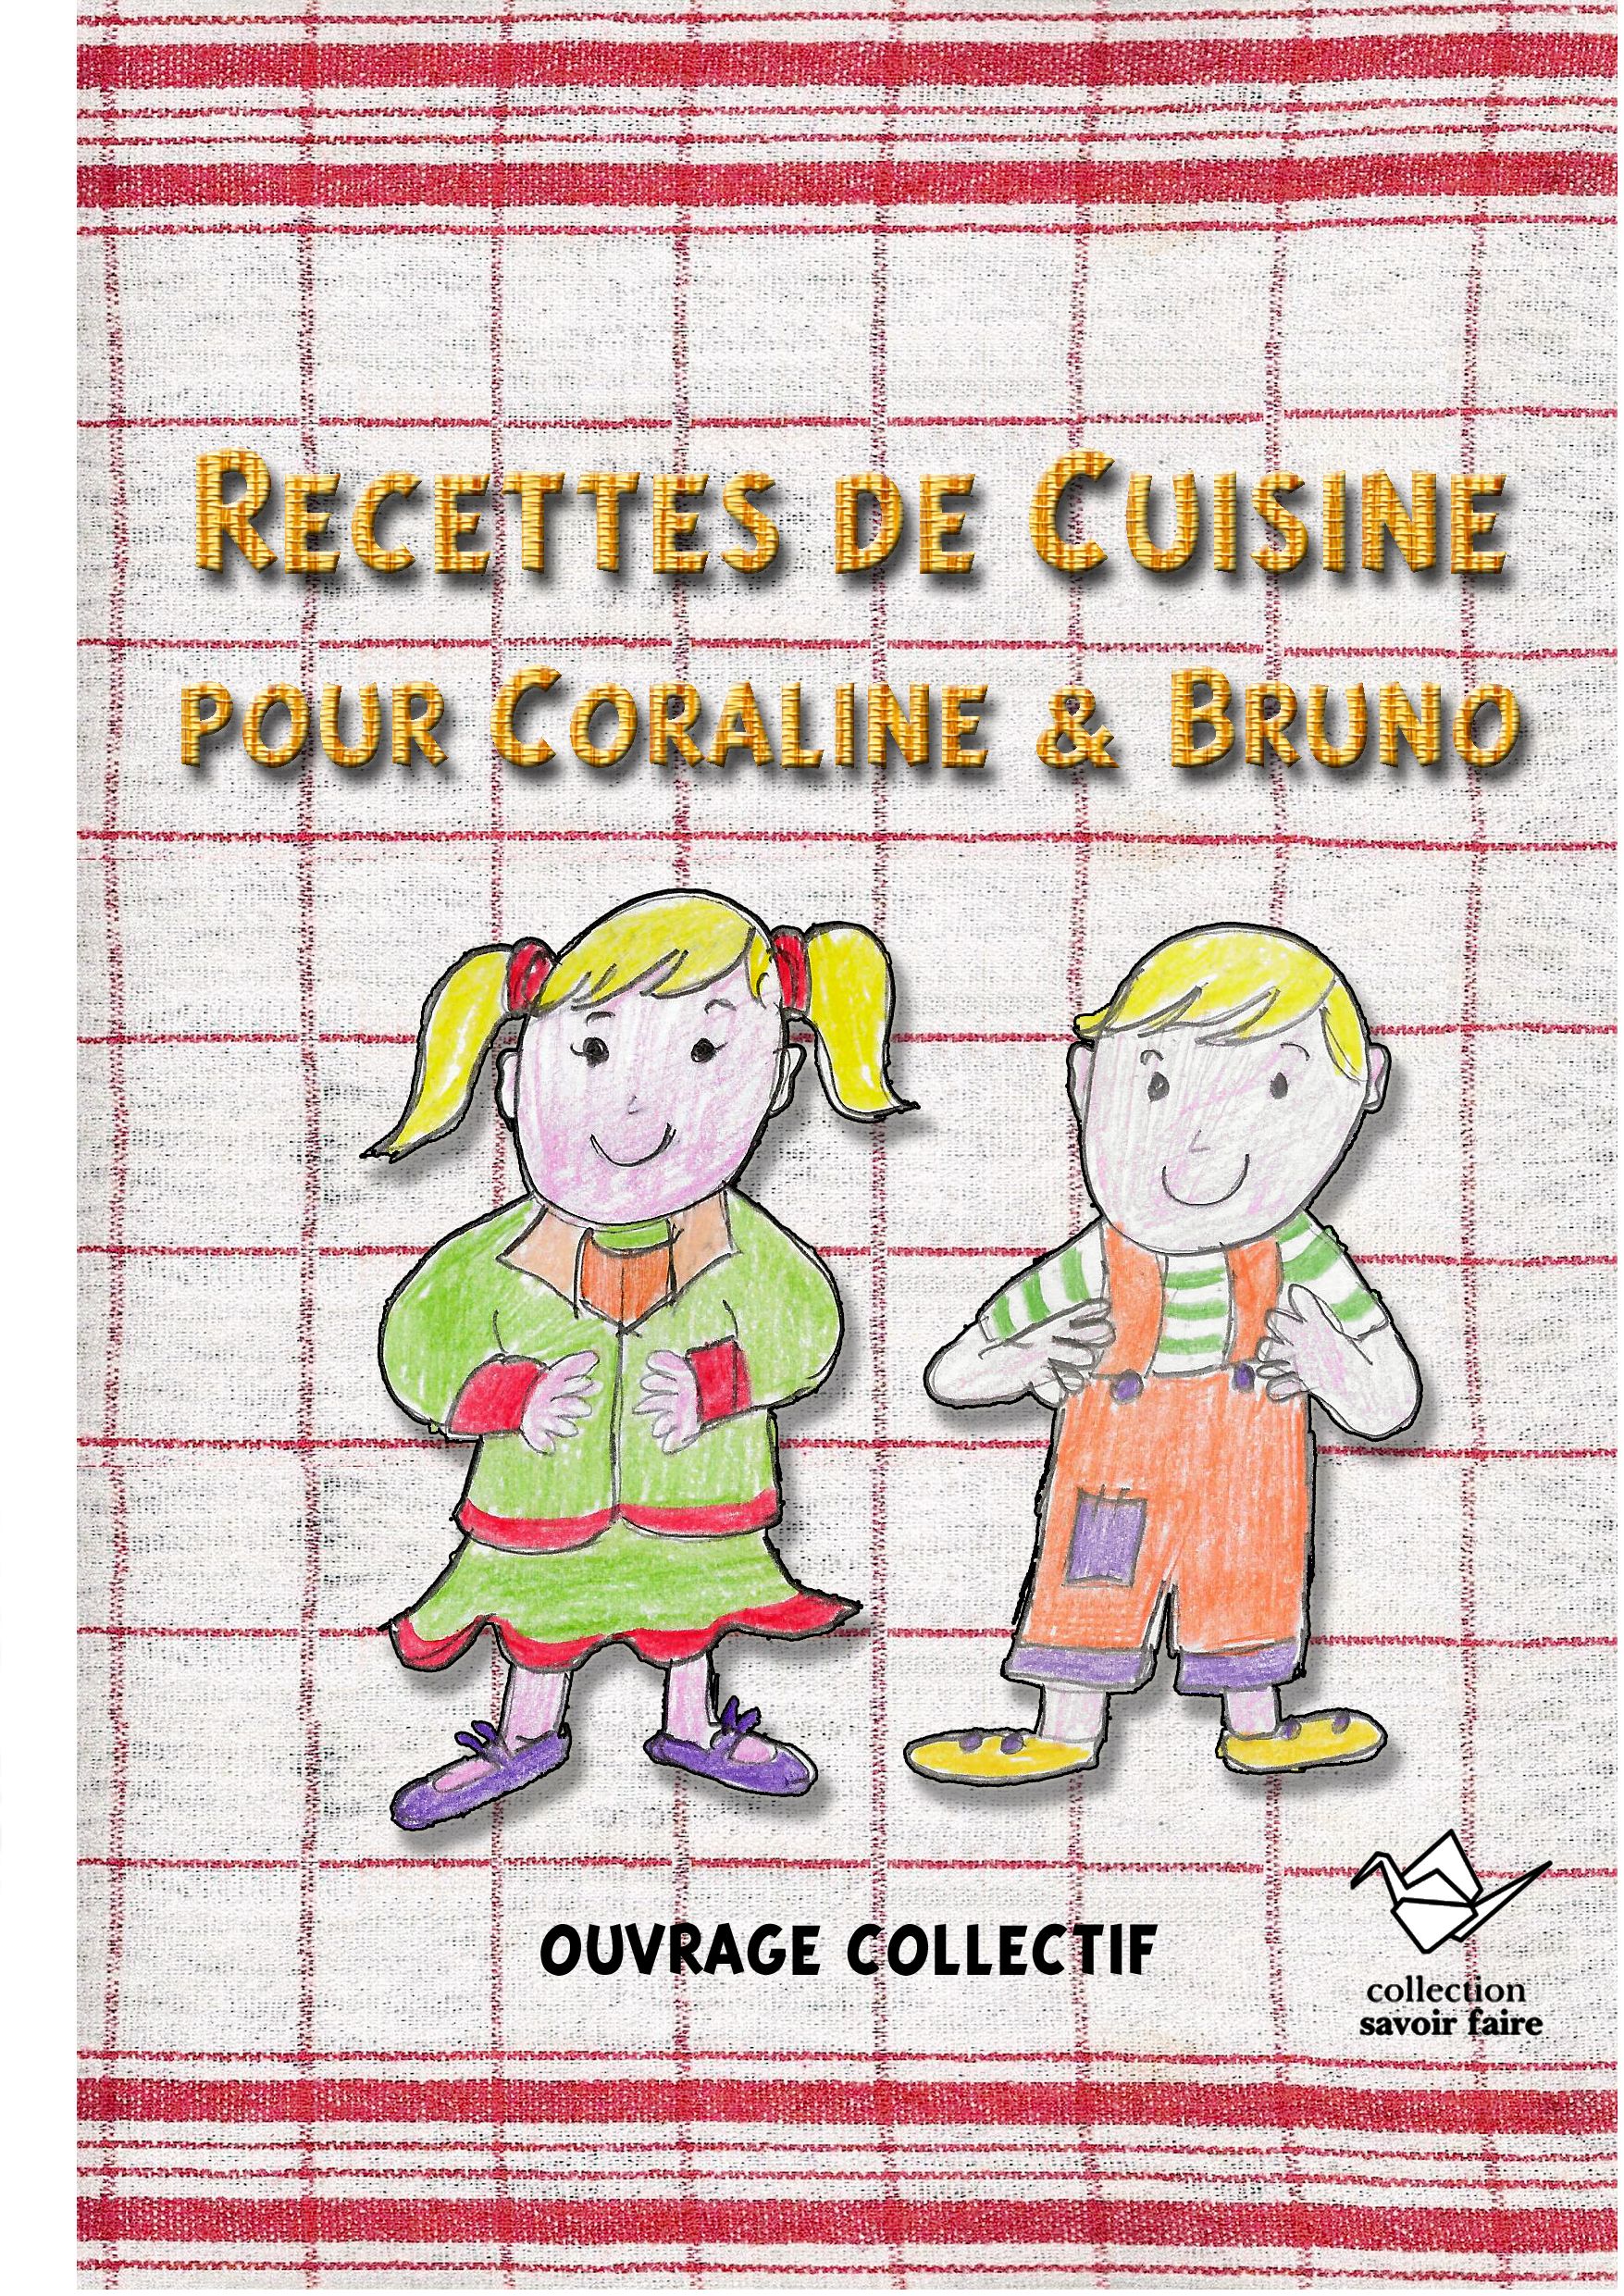 Recettes pour Coraline & Bruno